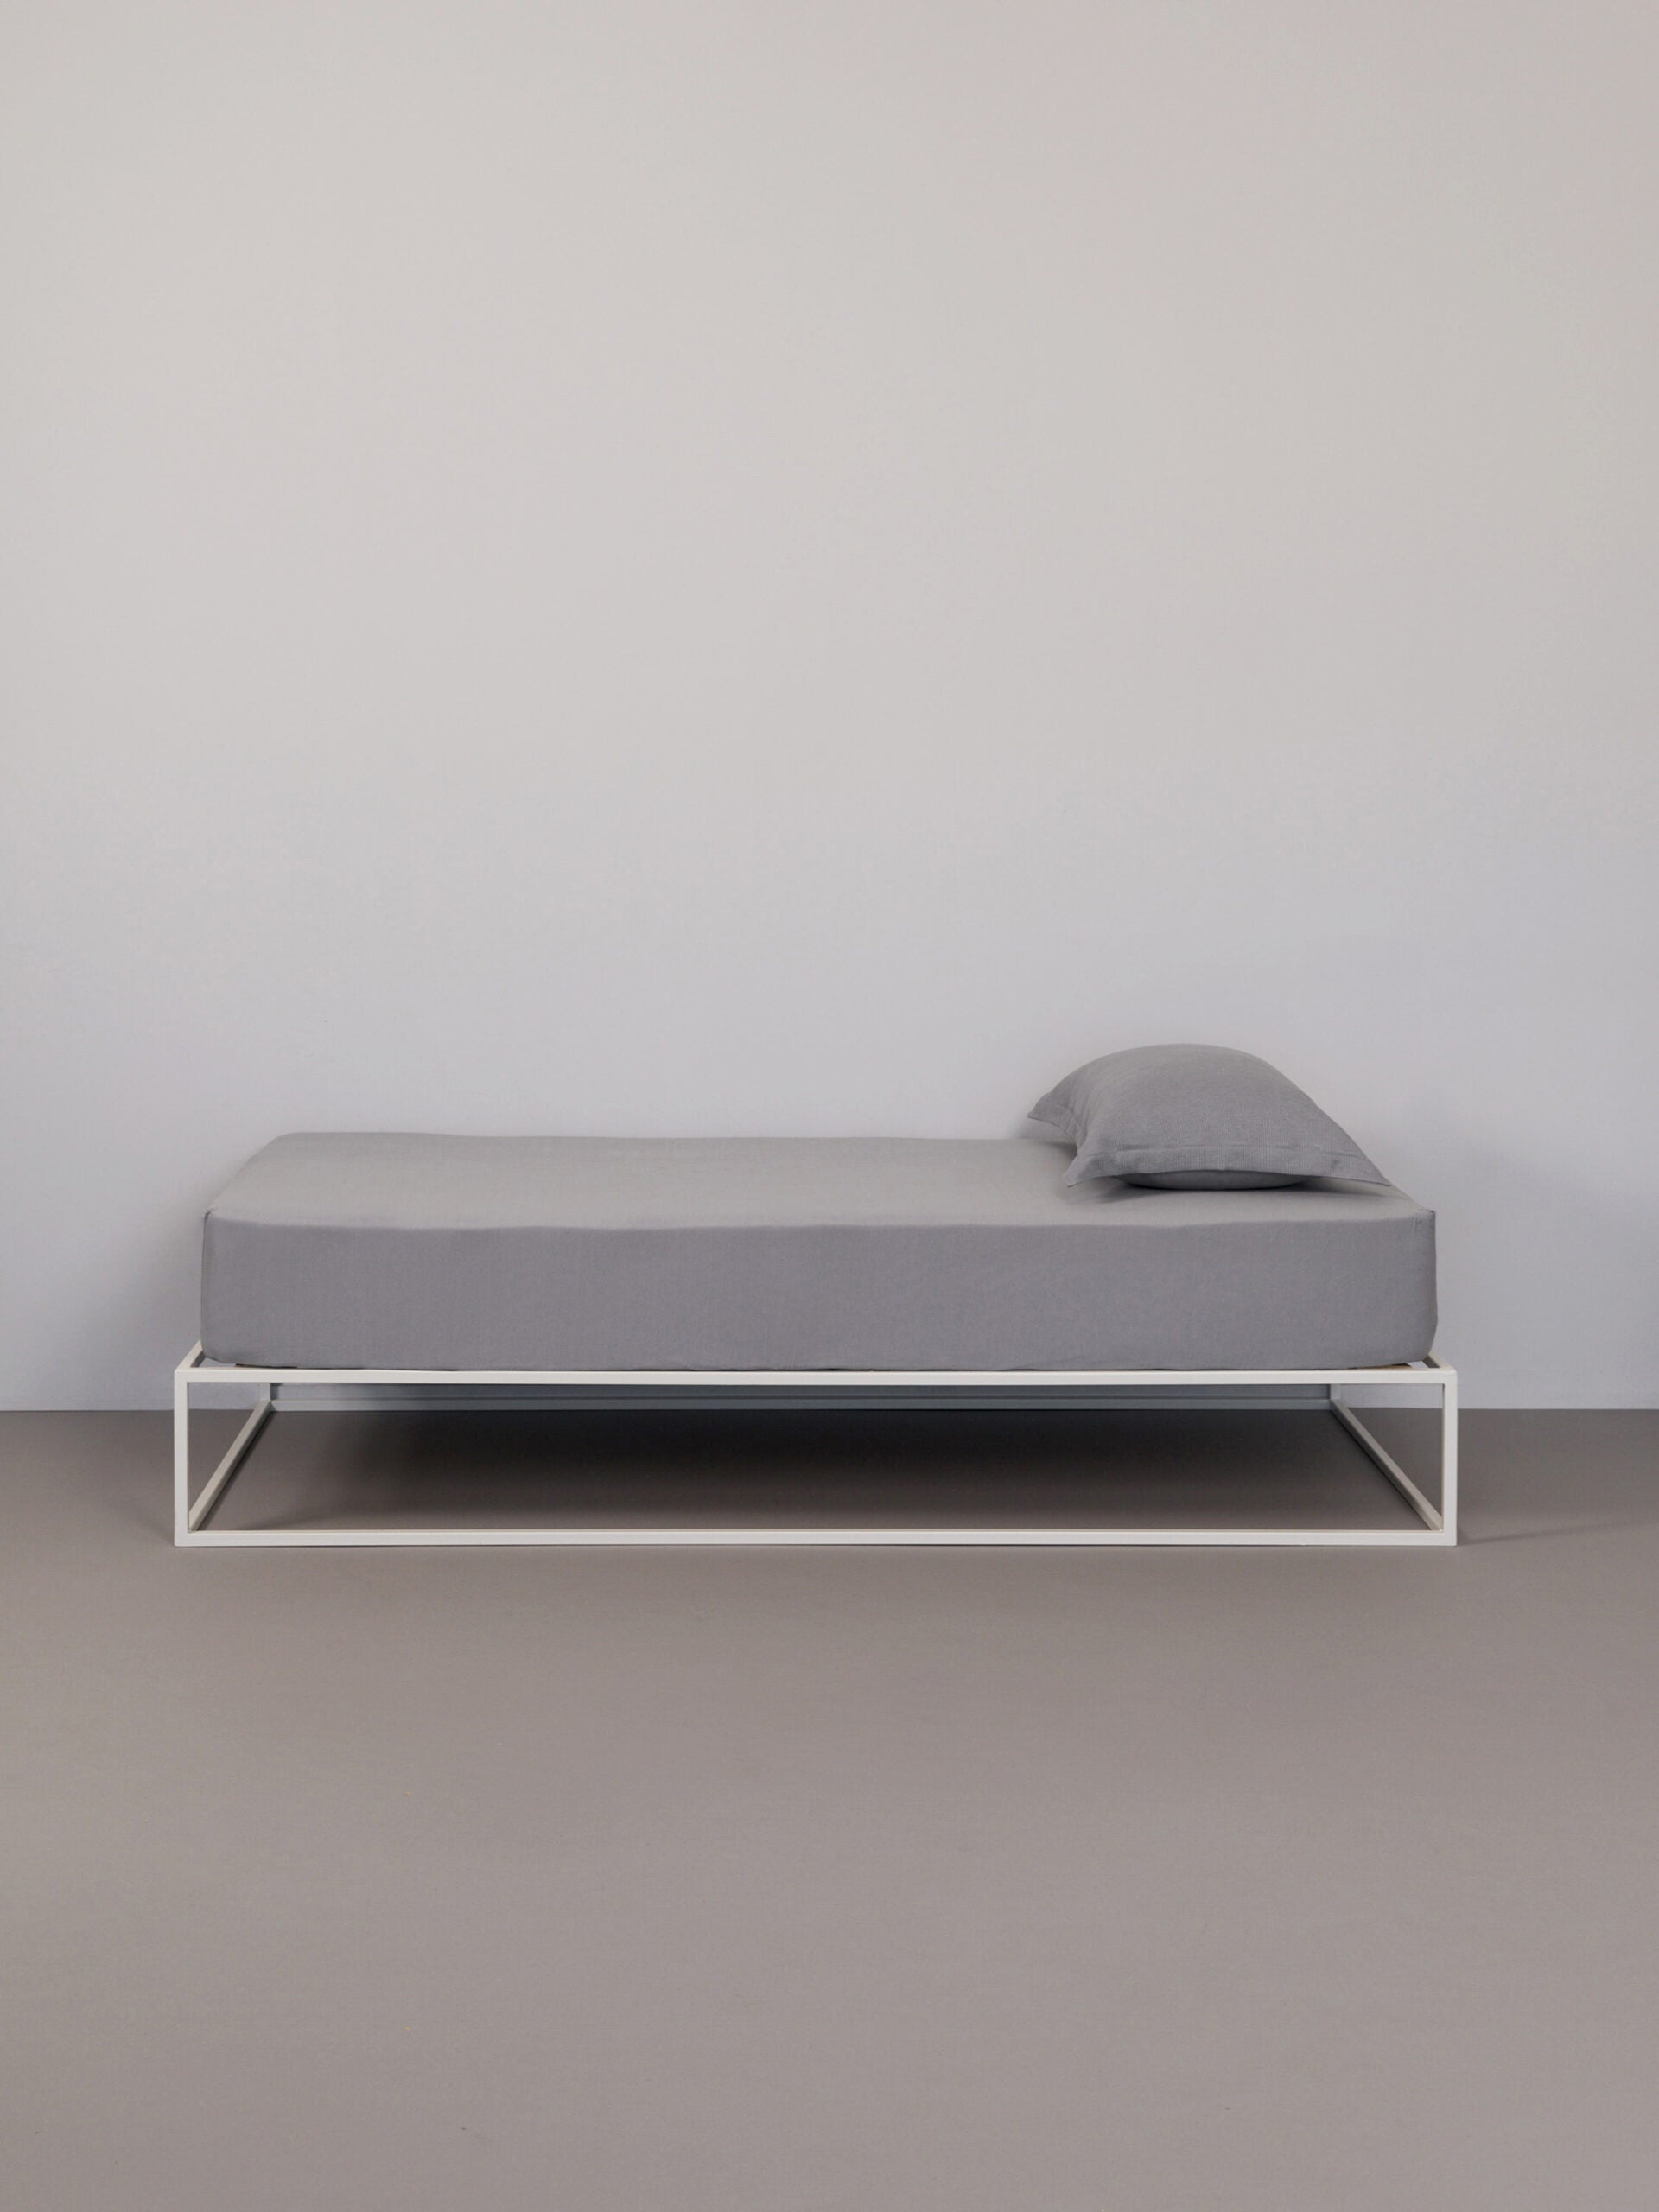 בתמונה: מיטת ברזל לבנה עם סדין וכרית עם ציפית לכרית טריקו Jacquard בצבע אפור